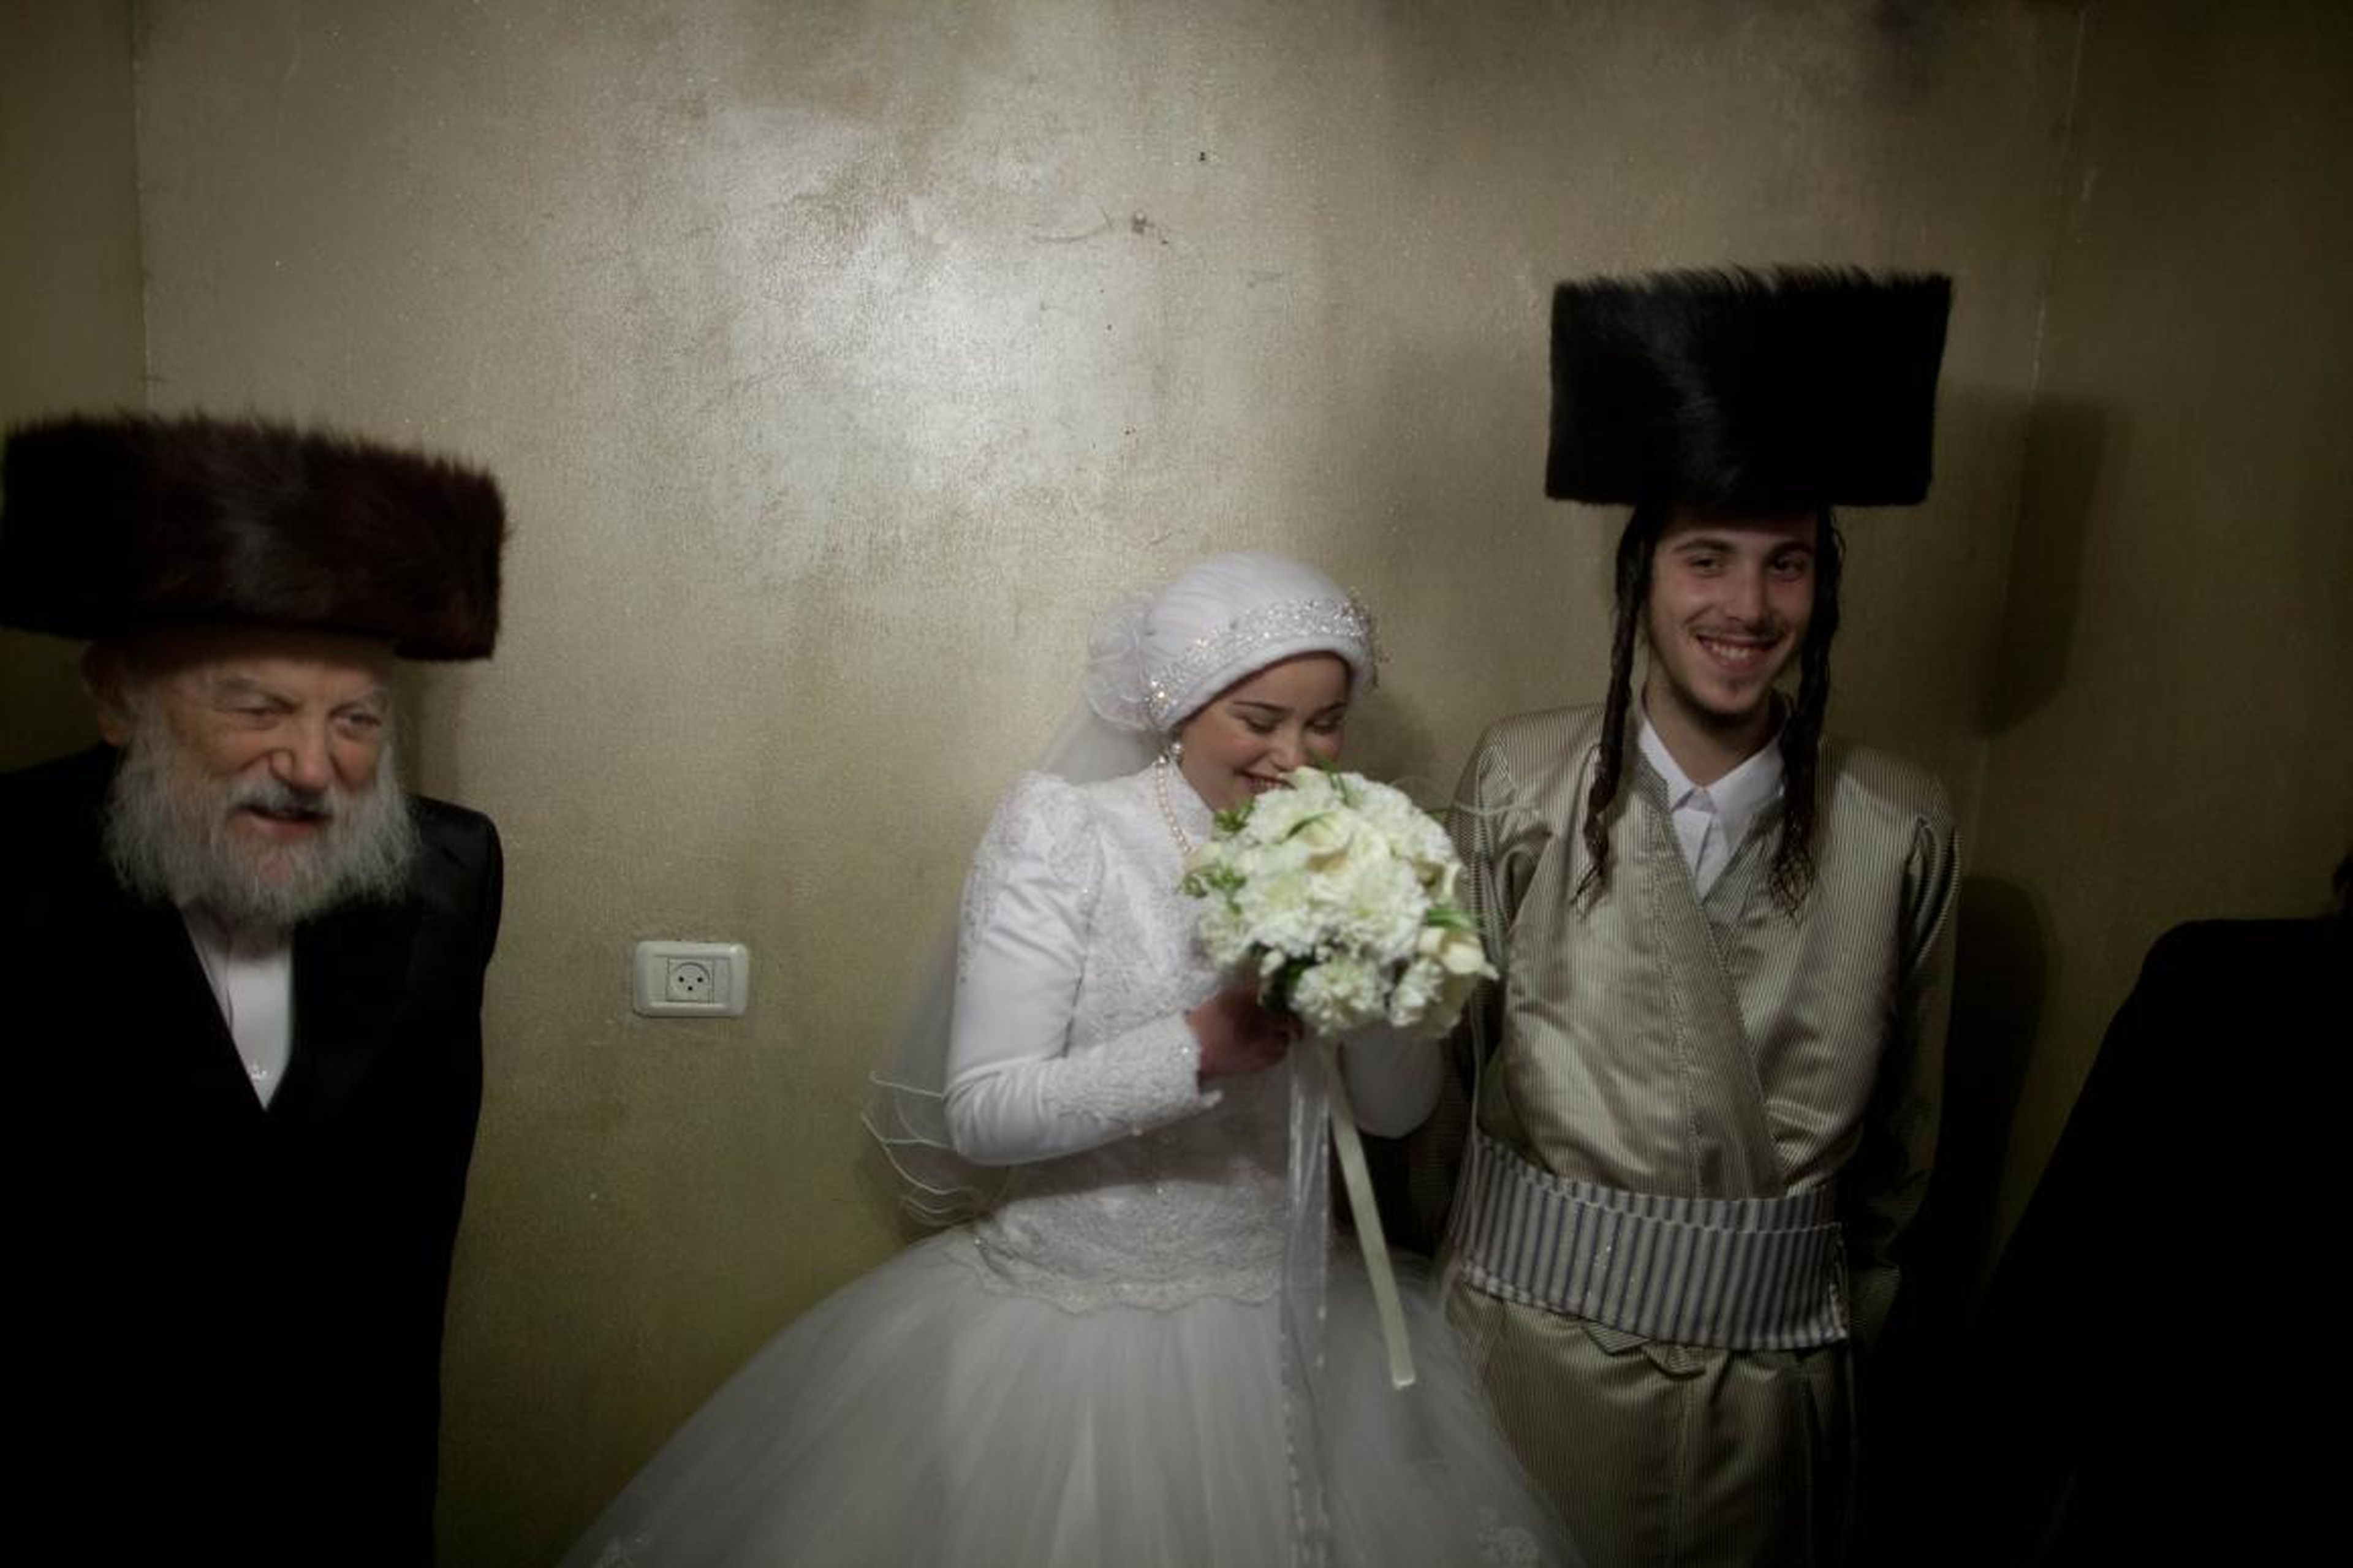 Algunas sinagogas tienen reglas estrictas sobre los colores o telas del vestido de novia.